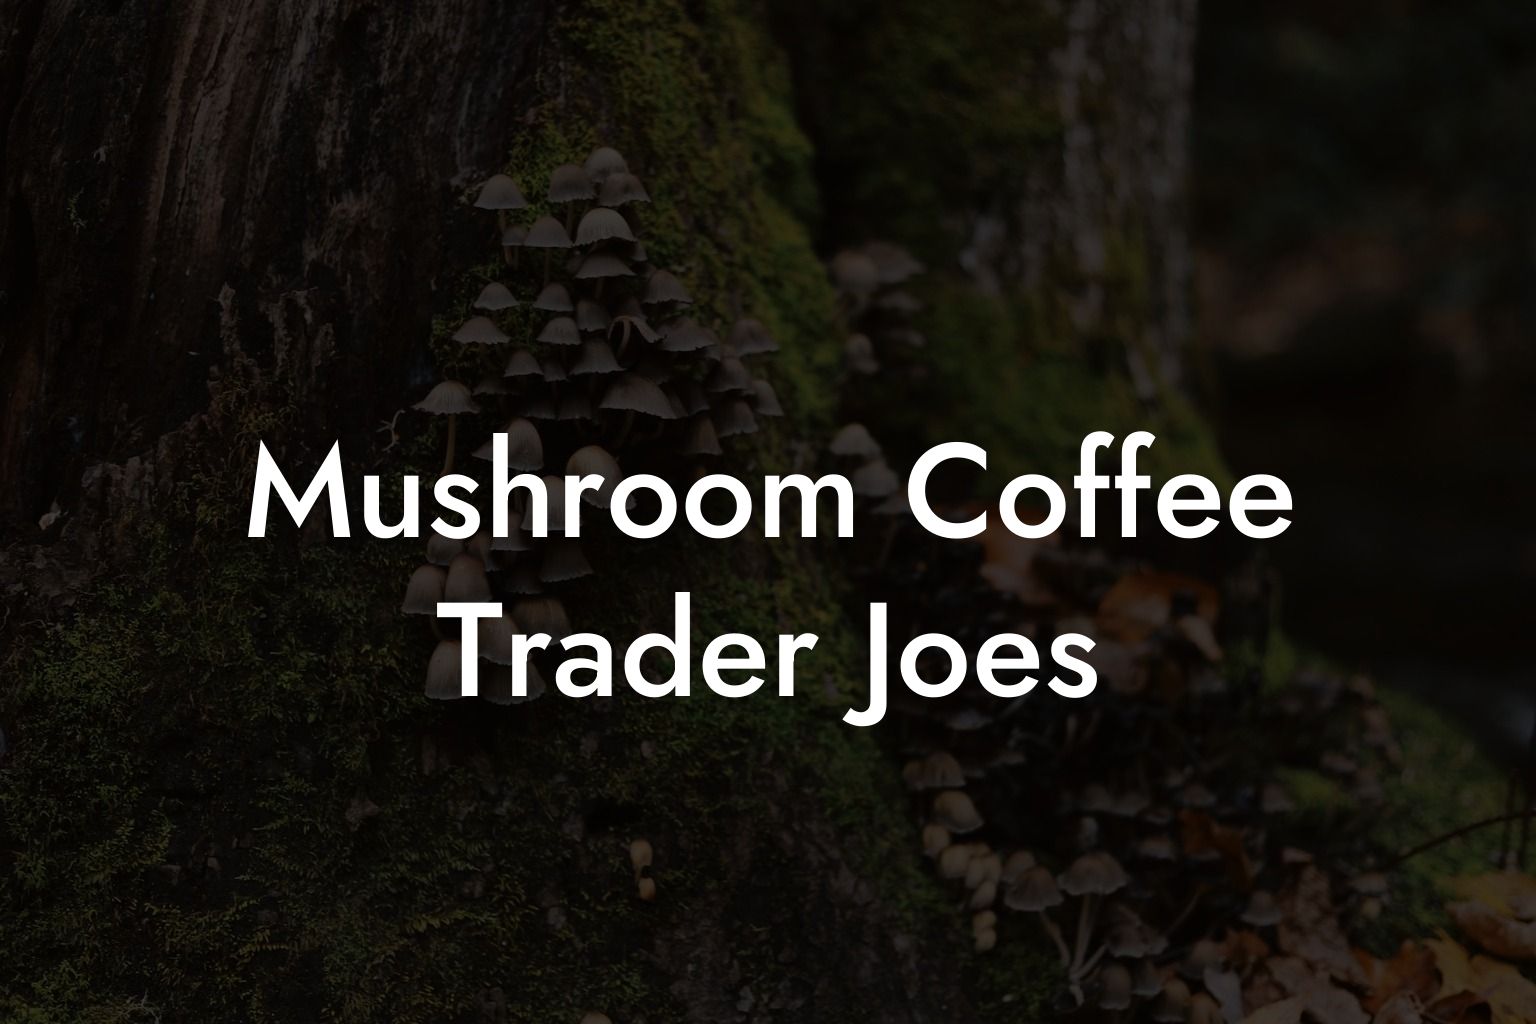 Mushroom Coffee Trader Joe's